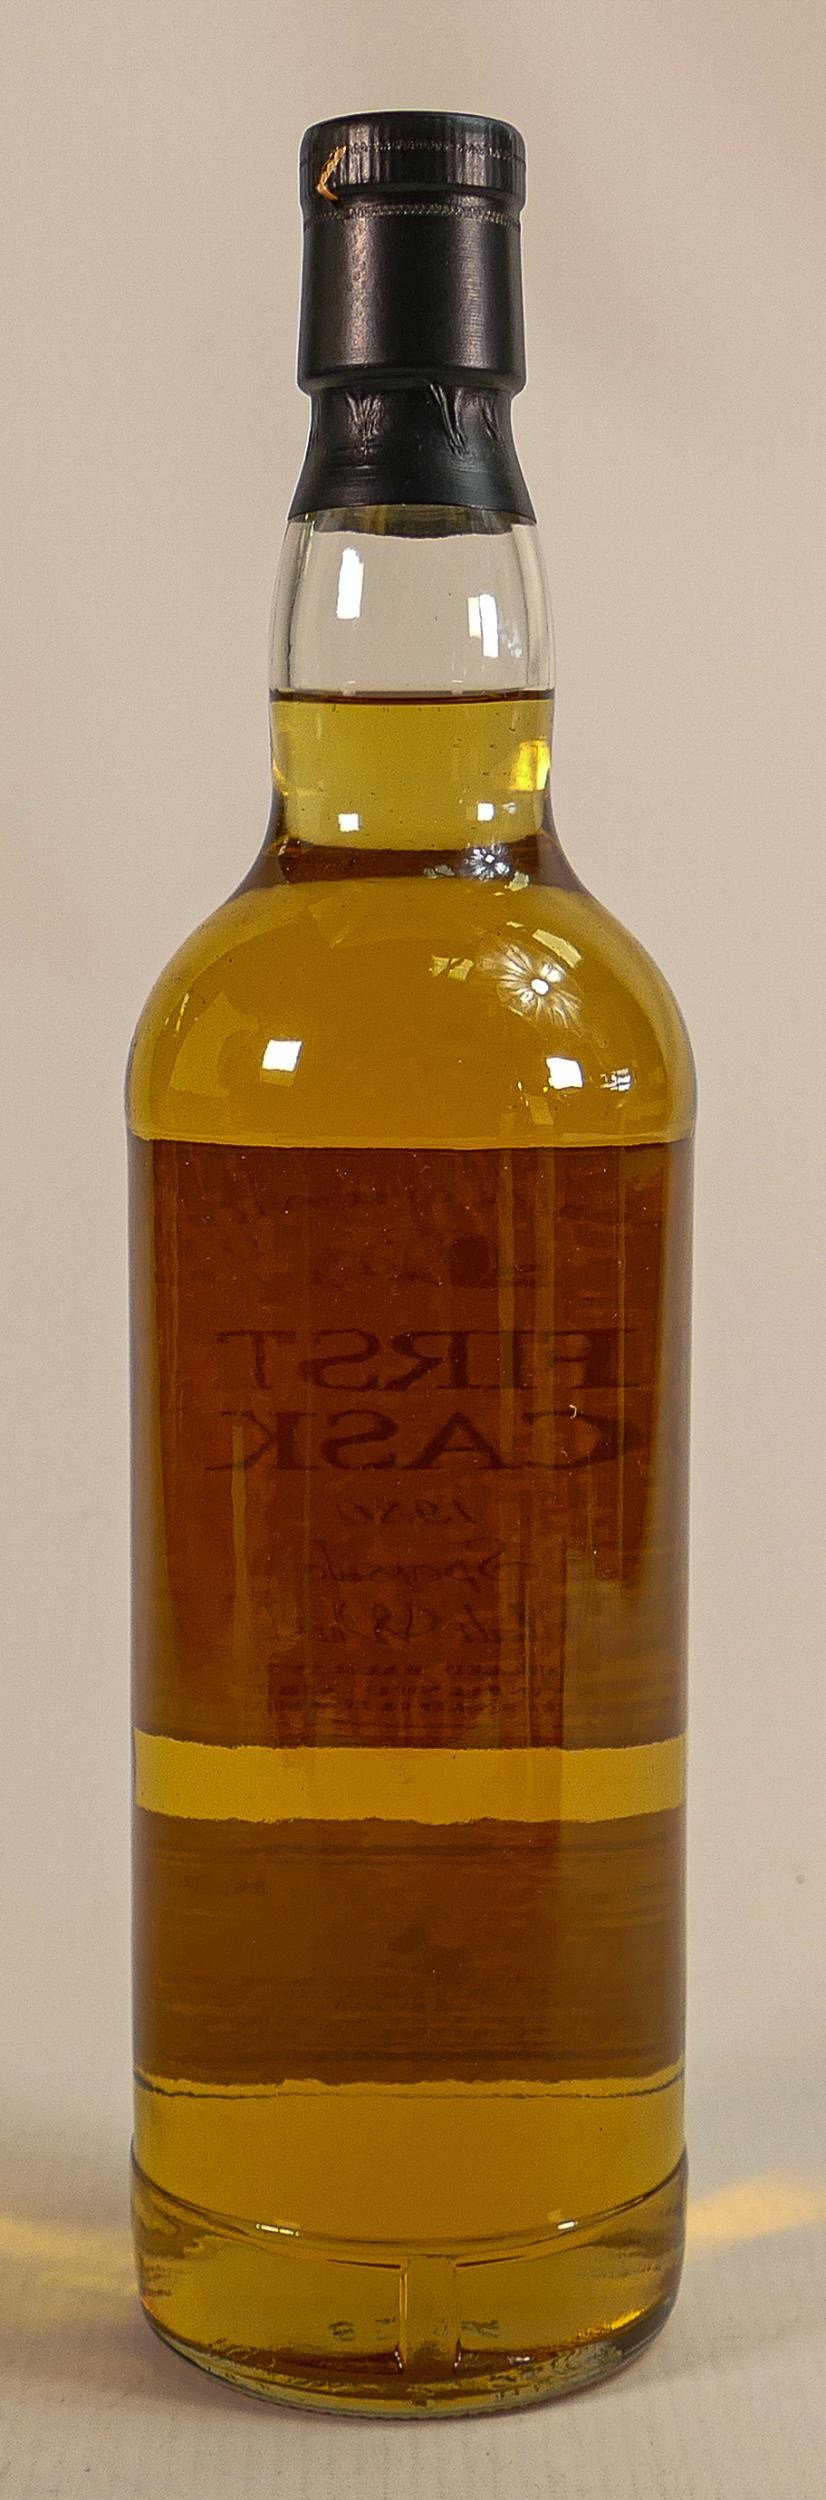 A 70cl bottle of First Cask 1980 Speyside malt Whisky. Cask number 13741, bottle number 3. - Image 3 of 3